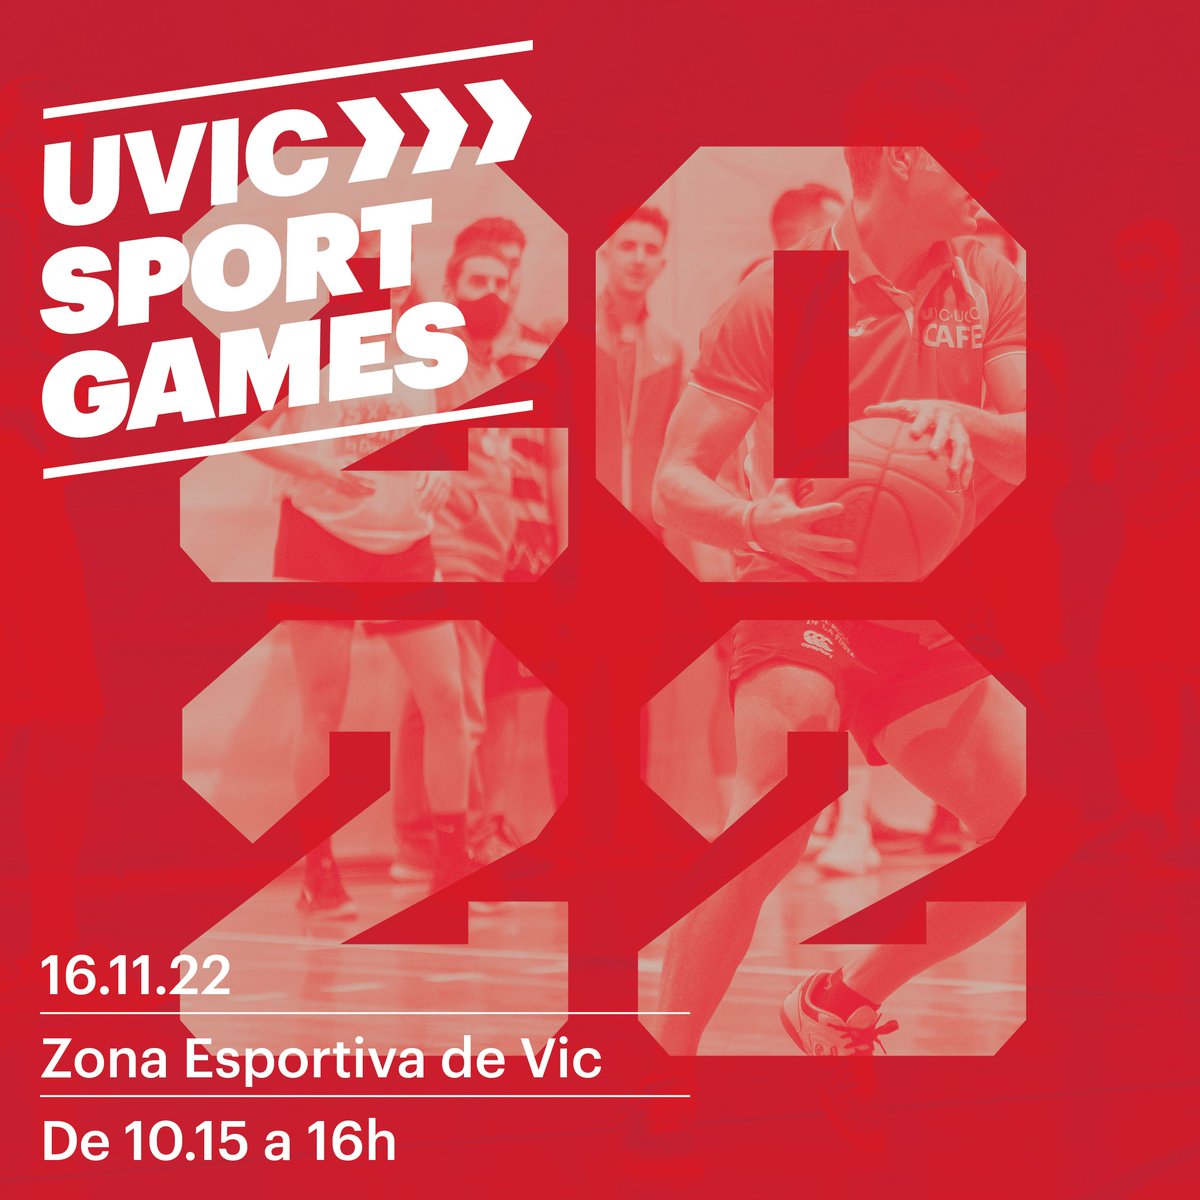 📢Apunta't a la 2a edició dels UVic Sport Games, la jornada esportiva universitària oberta a alumnes, professorat i PAS 📅16.11.2022 ⏲️De 10.15 a 16 h 📍Zona esportiva de Vic Informació👉uvic.cat/sport-games Inscripcions👉bit.ly/3WgaL2L